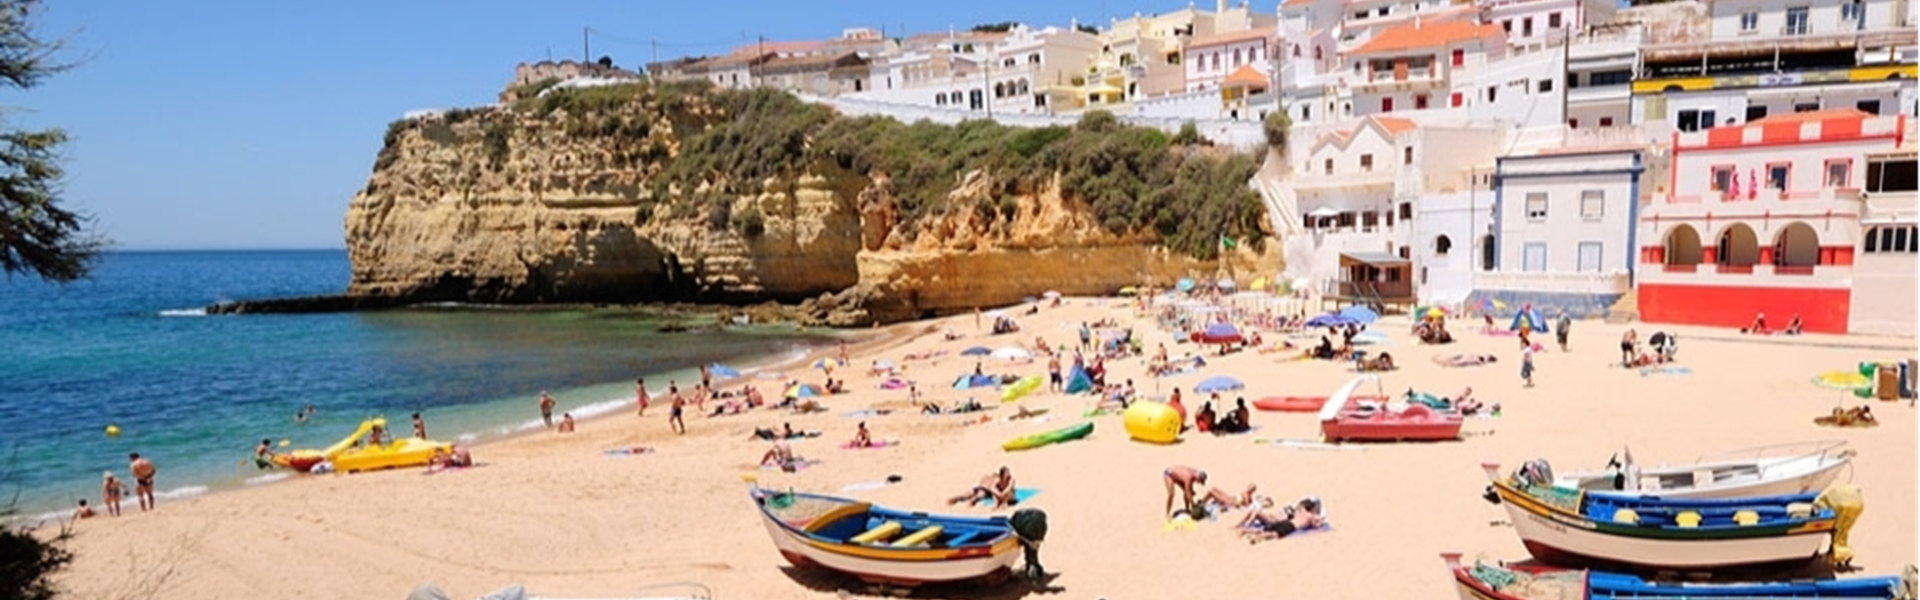 Immobilien, Verkauf, Verkauf, Verkauf Tipps kaufen Tipps, Algarve, beste Preise